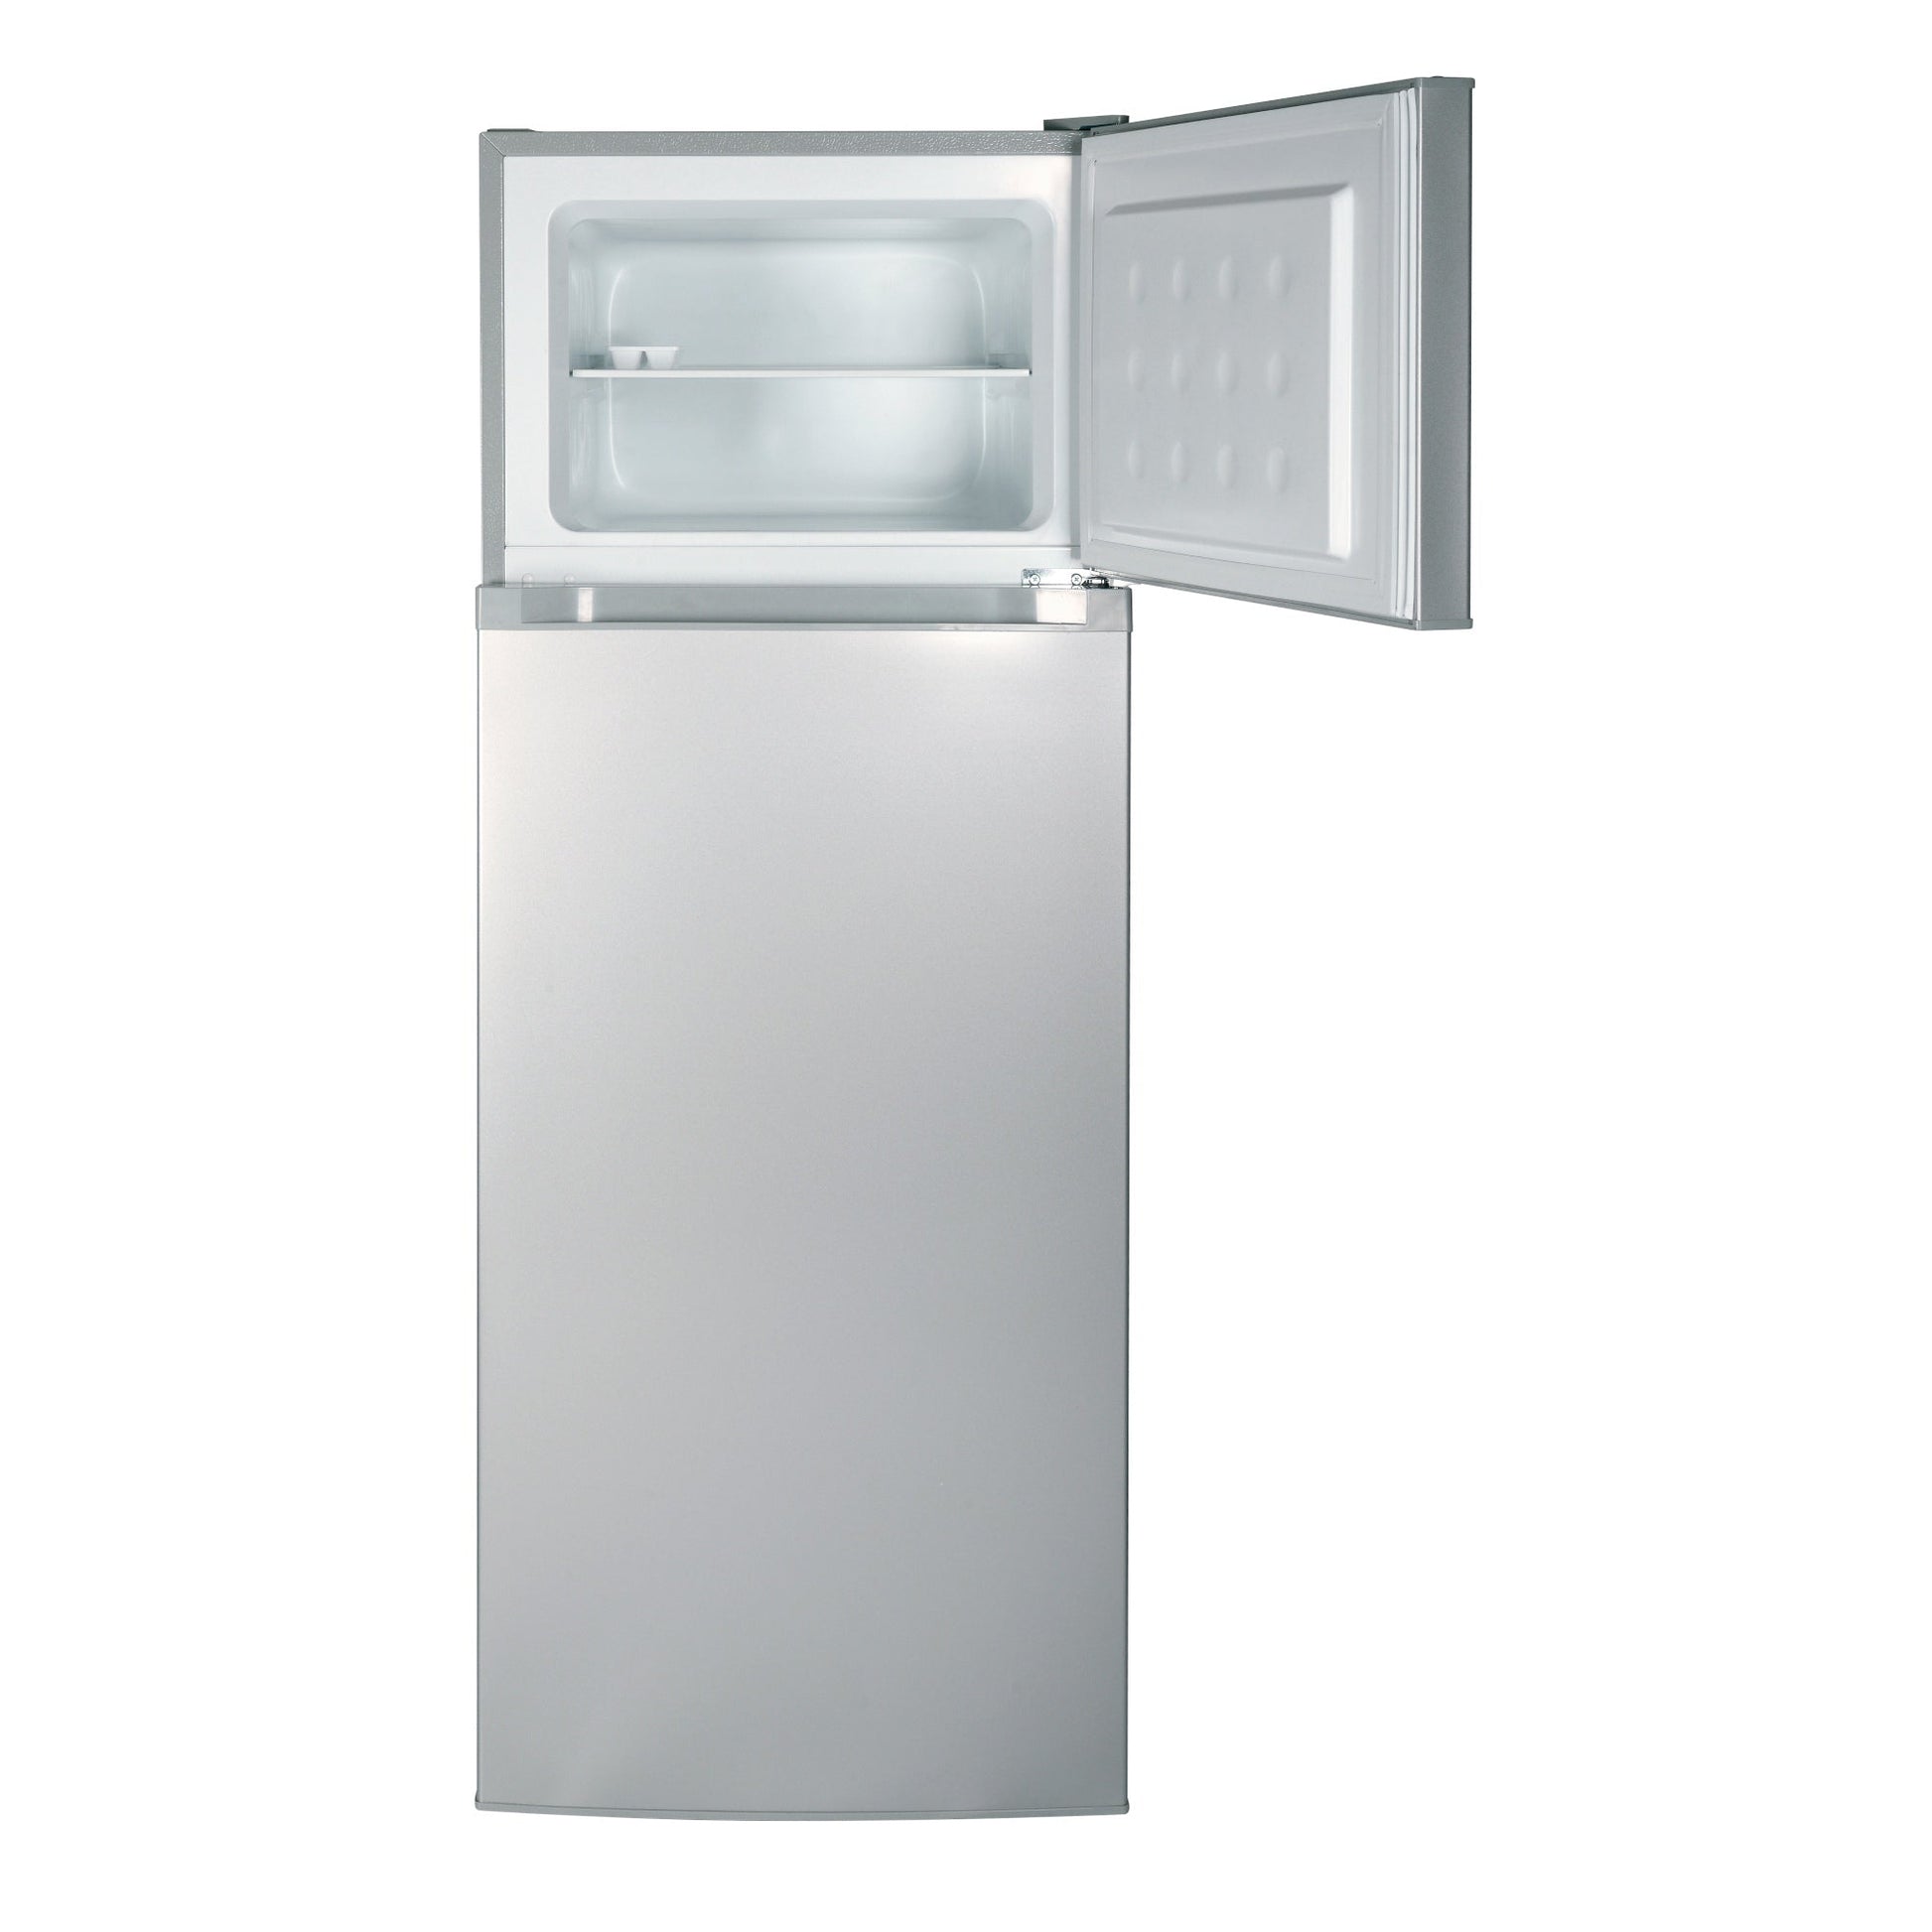 Refrigerador Top Mount 206 Lts Rd-2020 Silver5#Silver